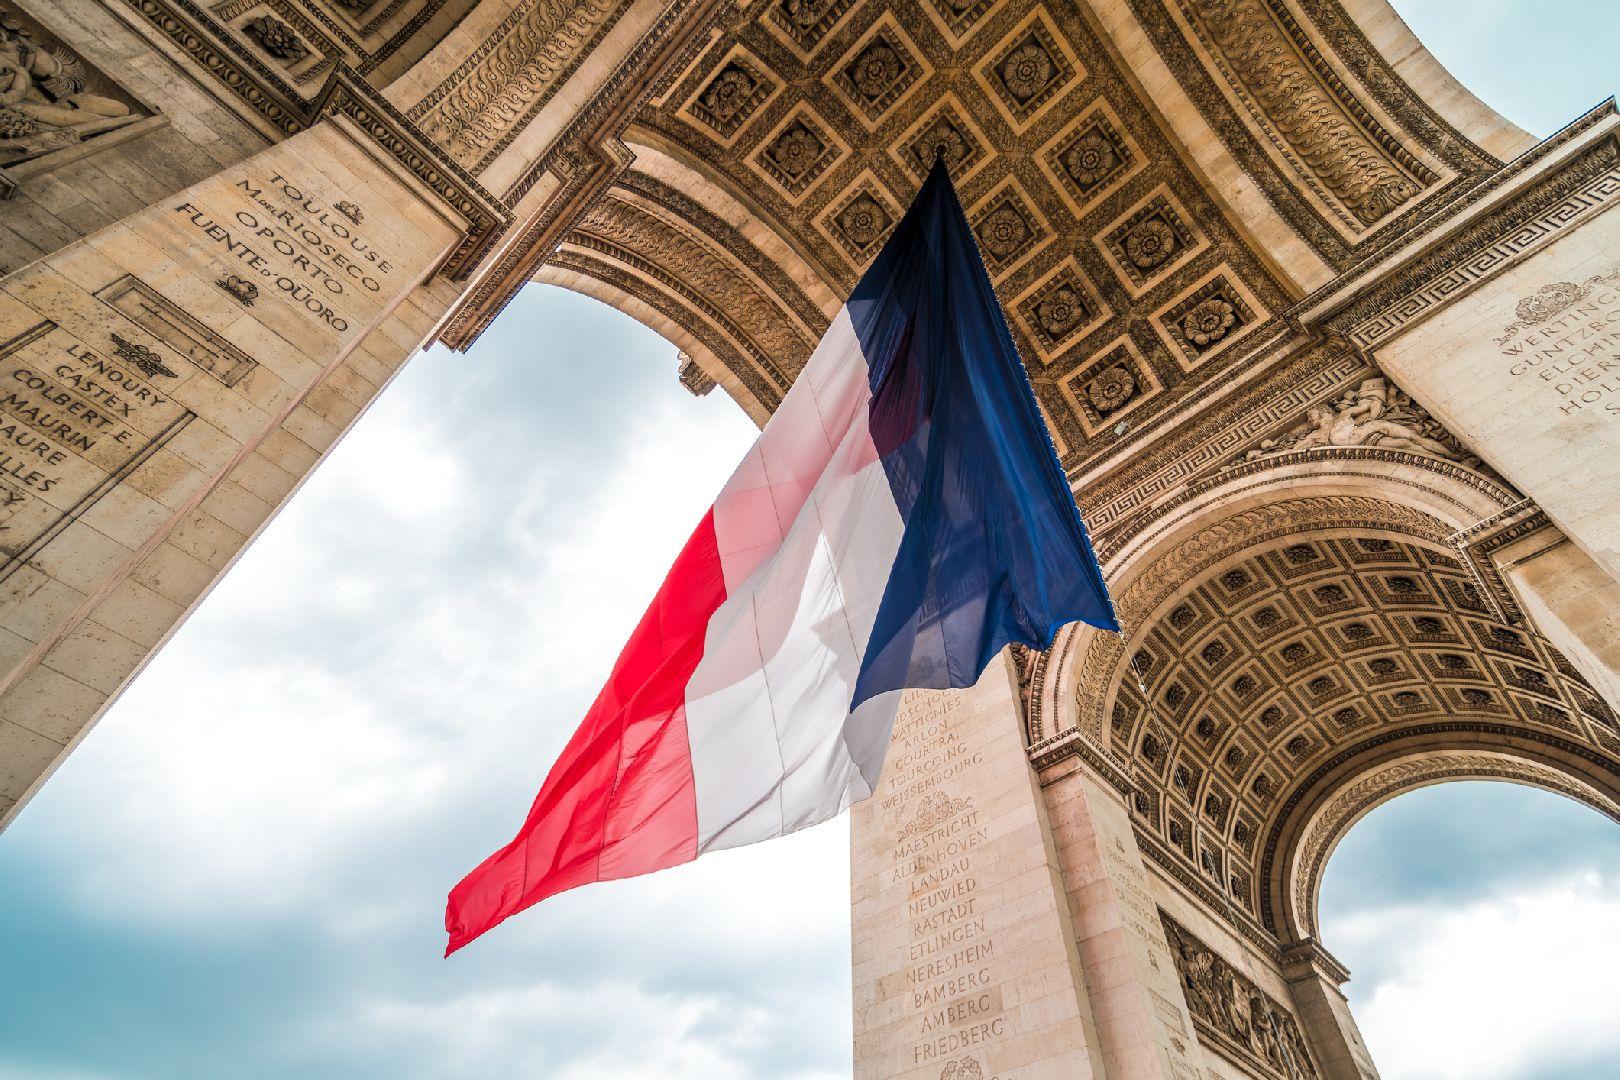 Франция отозвала своего посла в Азербайджане